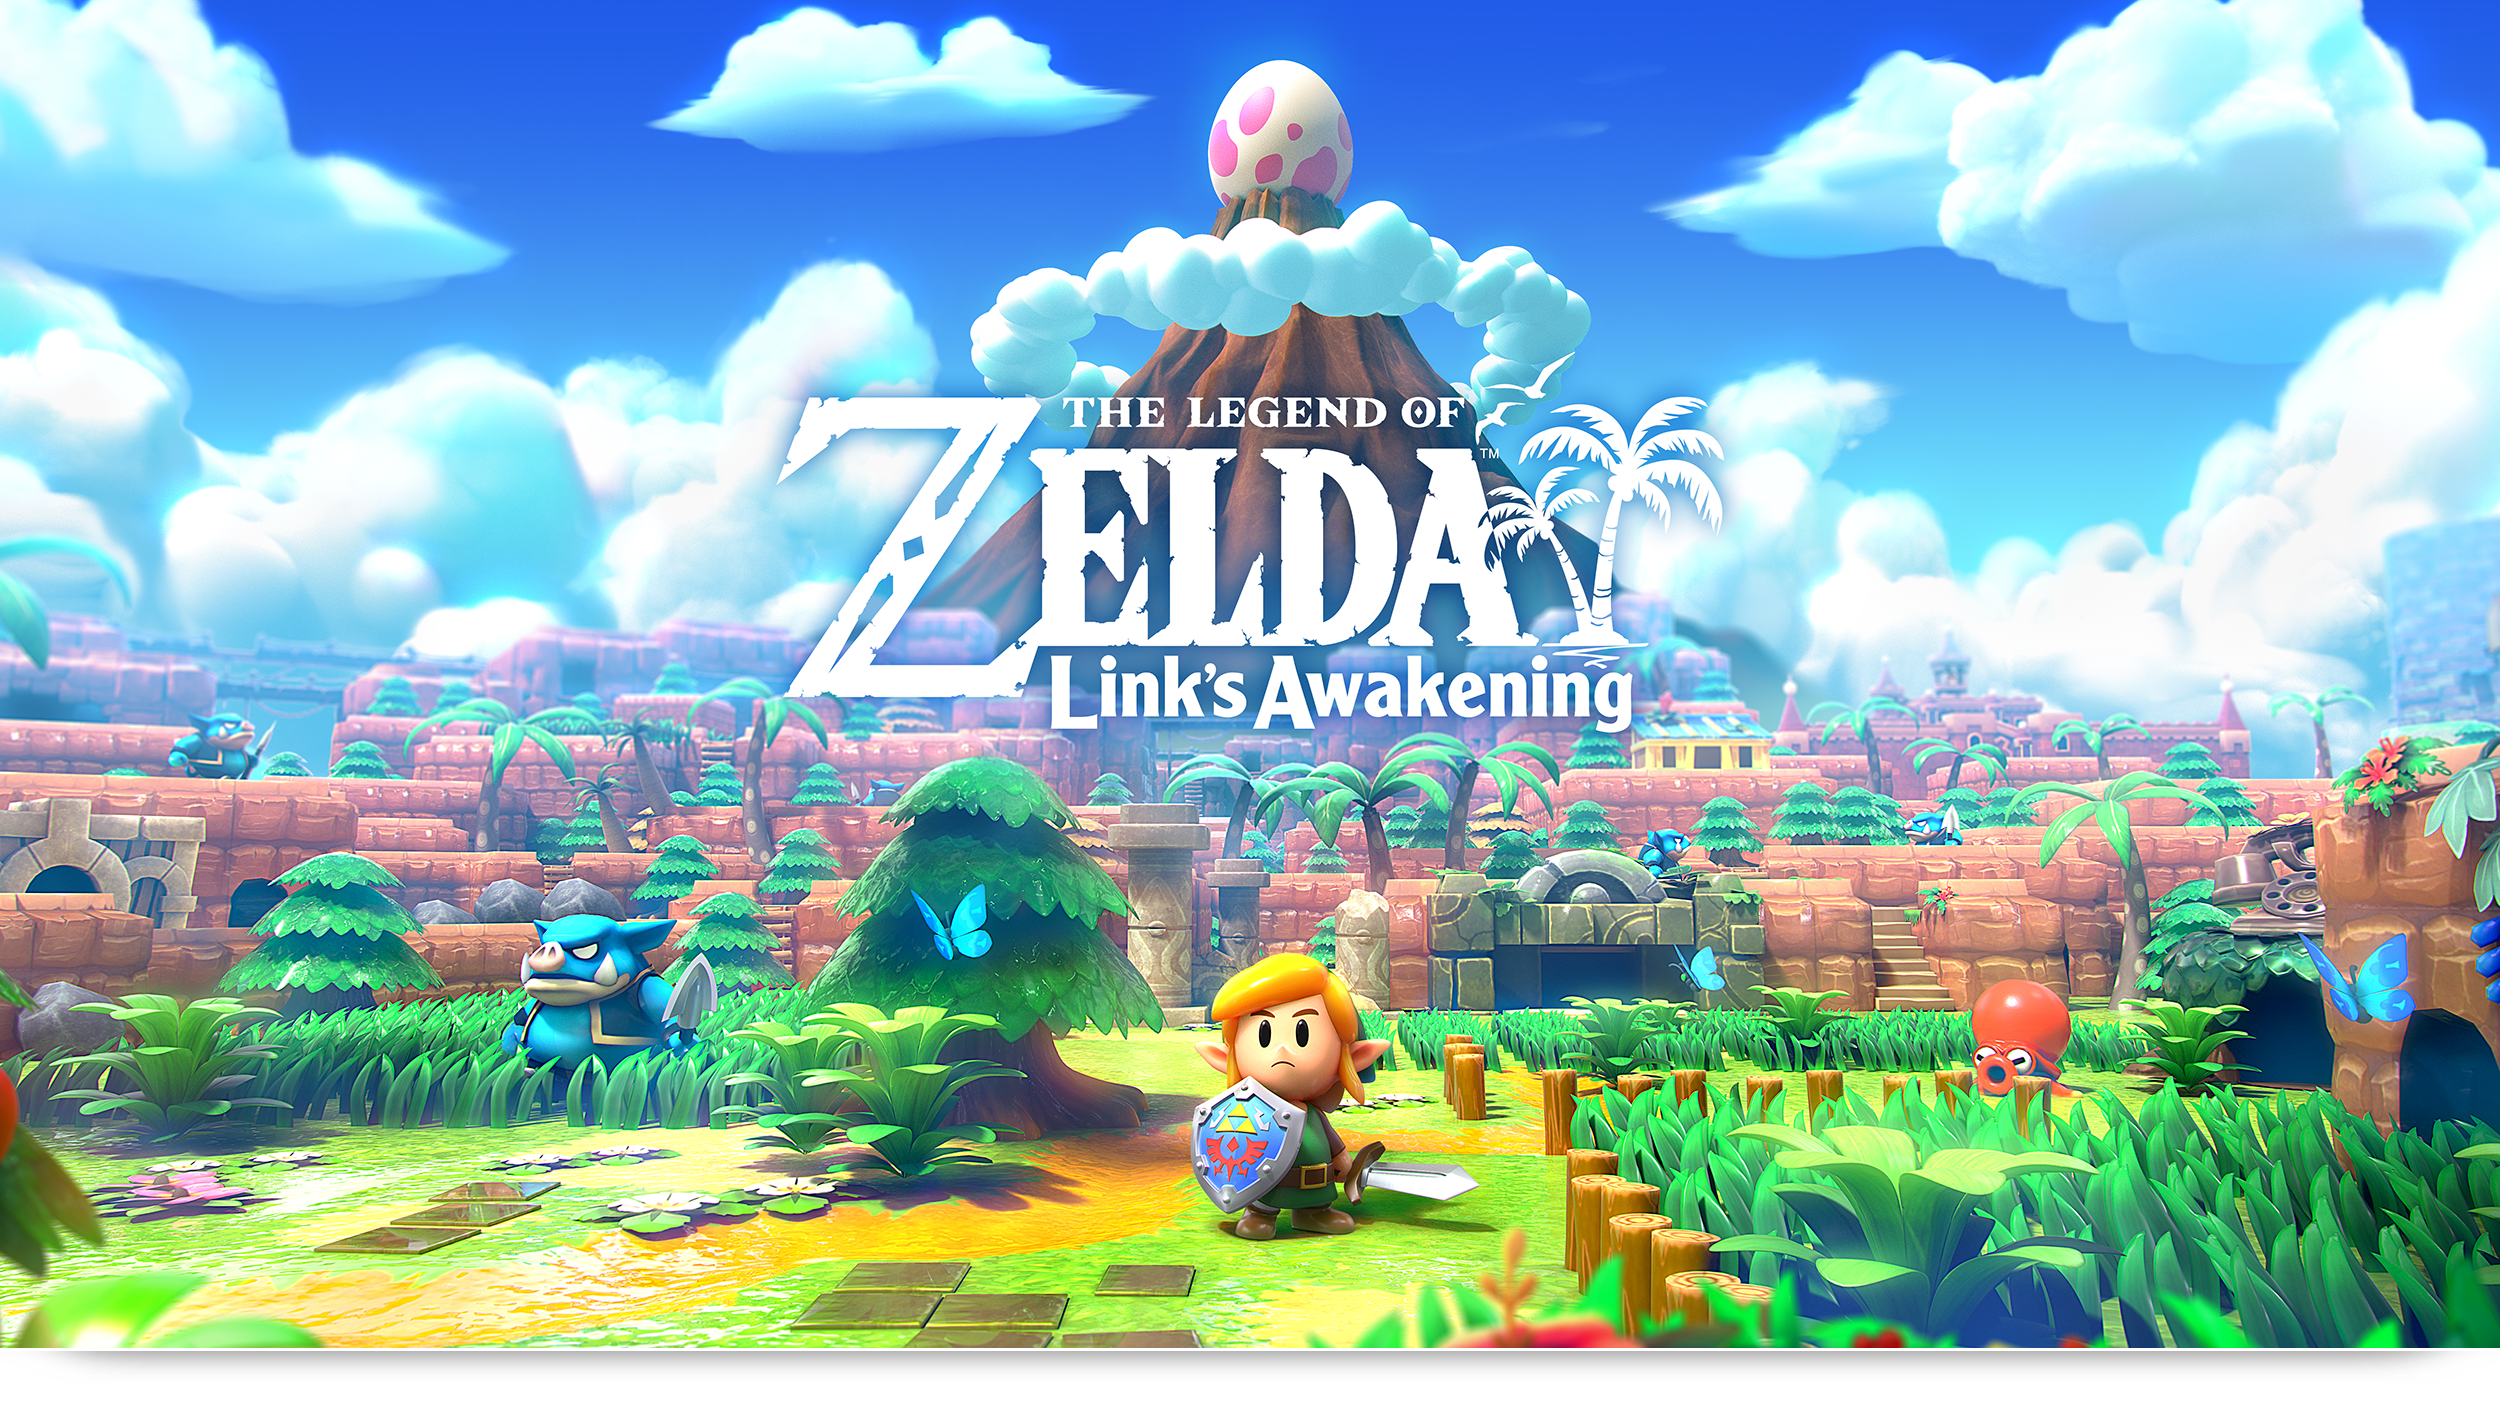 The Legend Of Zelda - Link's Awaking